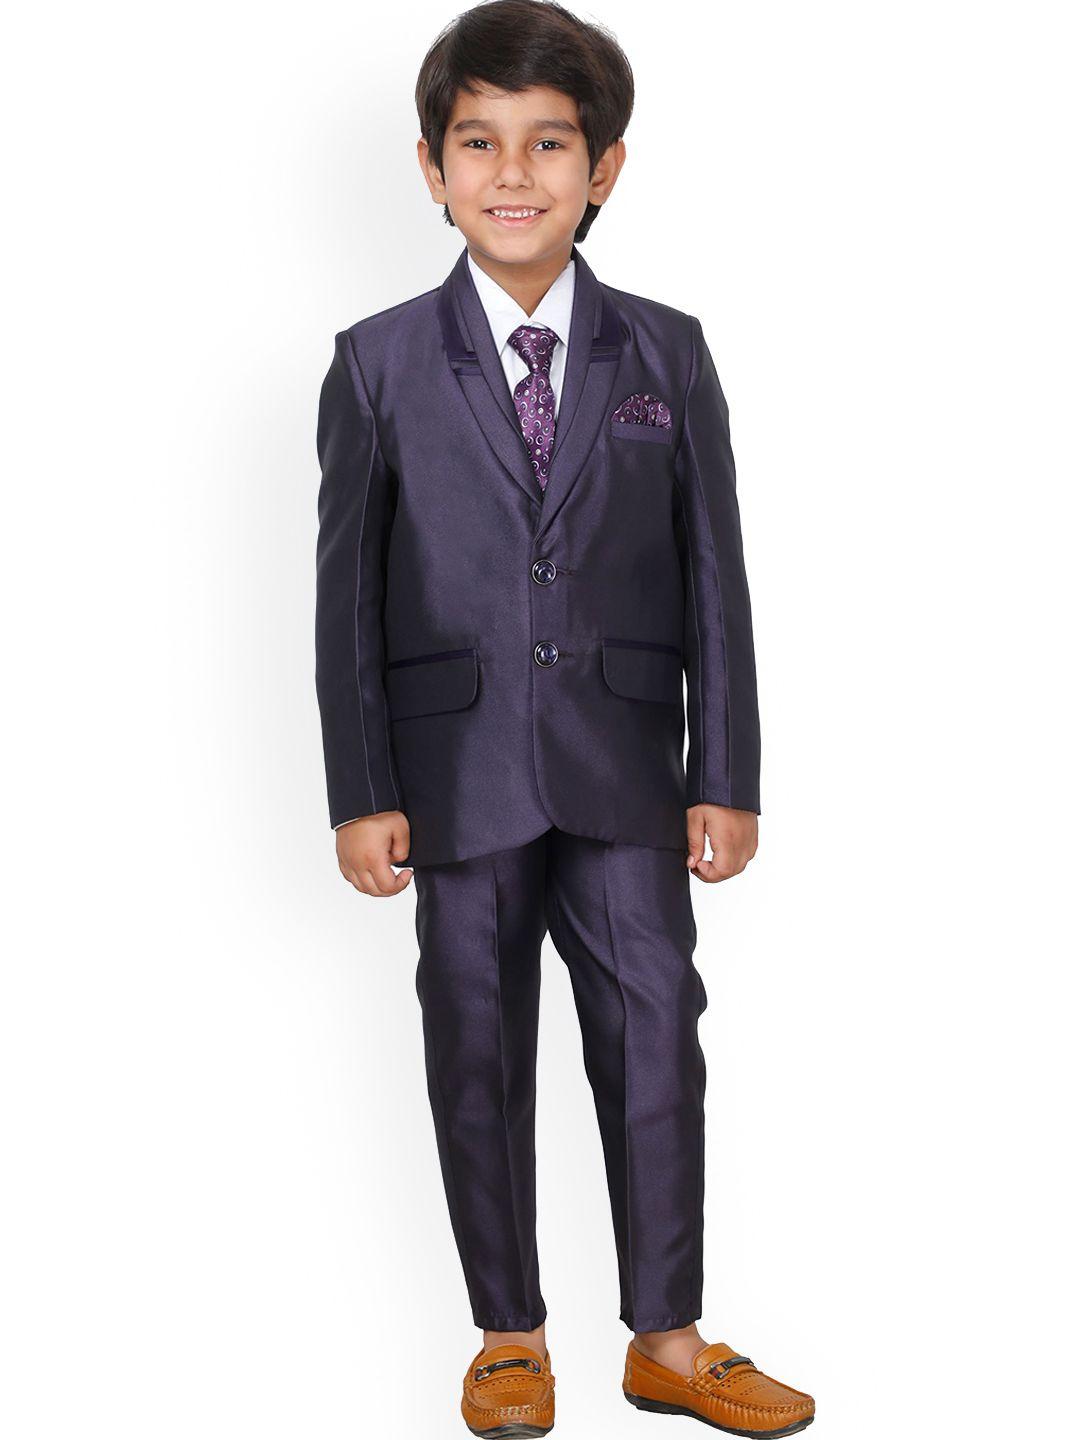 dkgf fashion purple 4-piece party suit